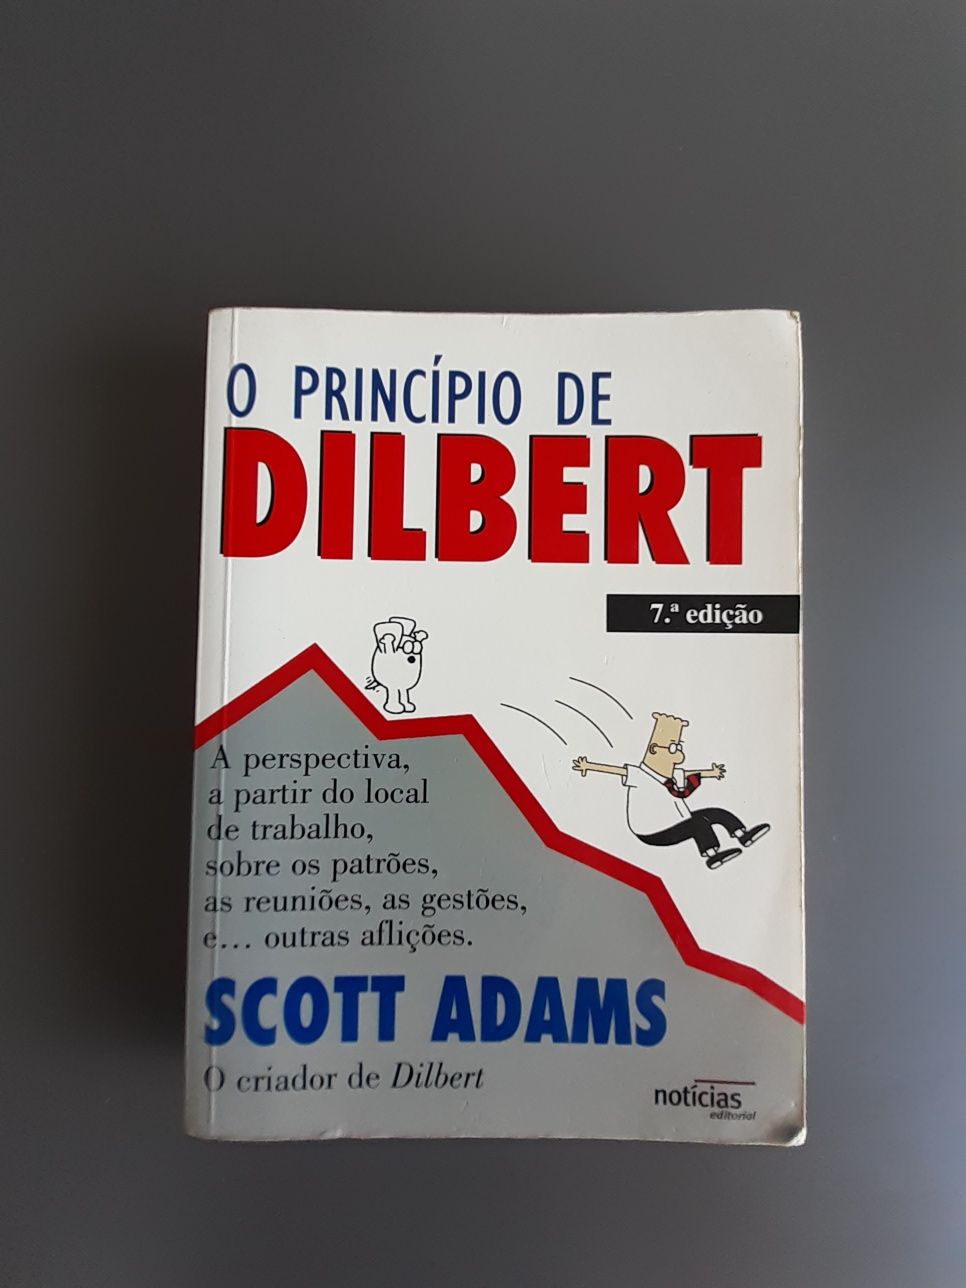 Livro "O Princípio de Dilbert" de Scott Adams